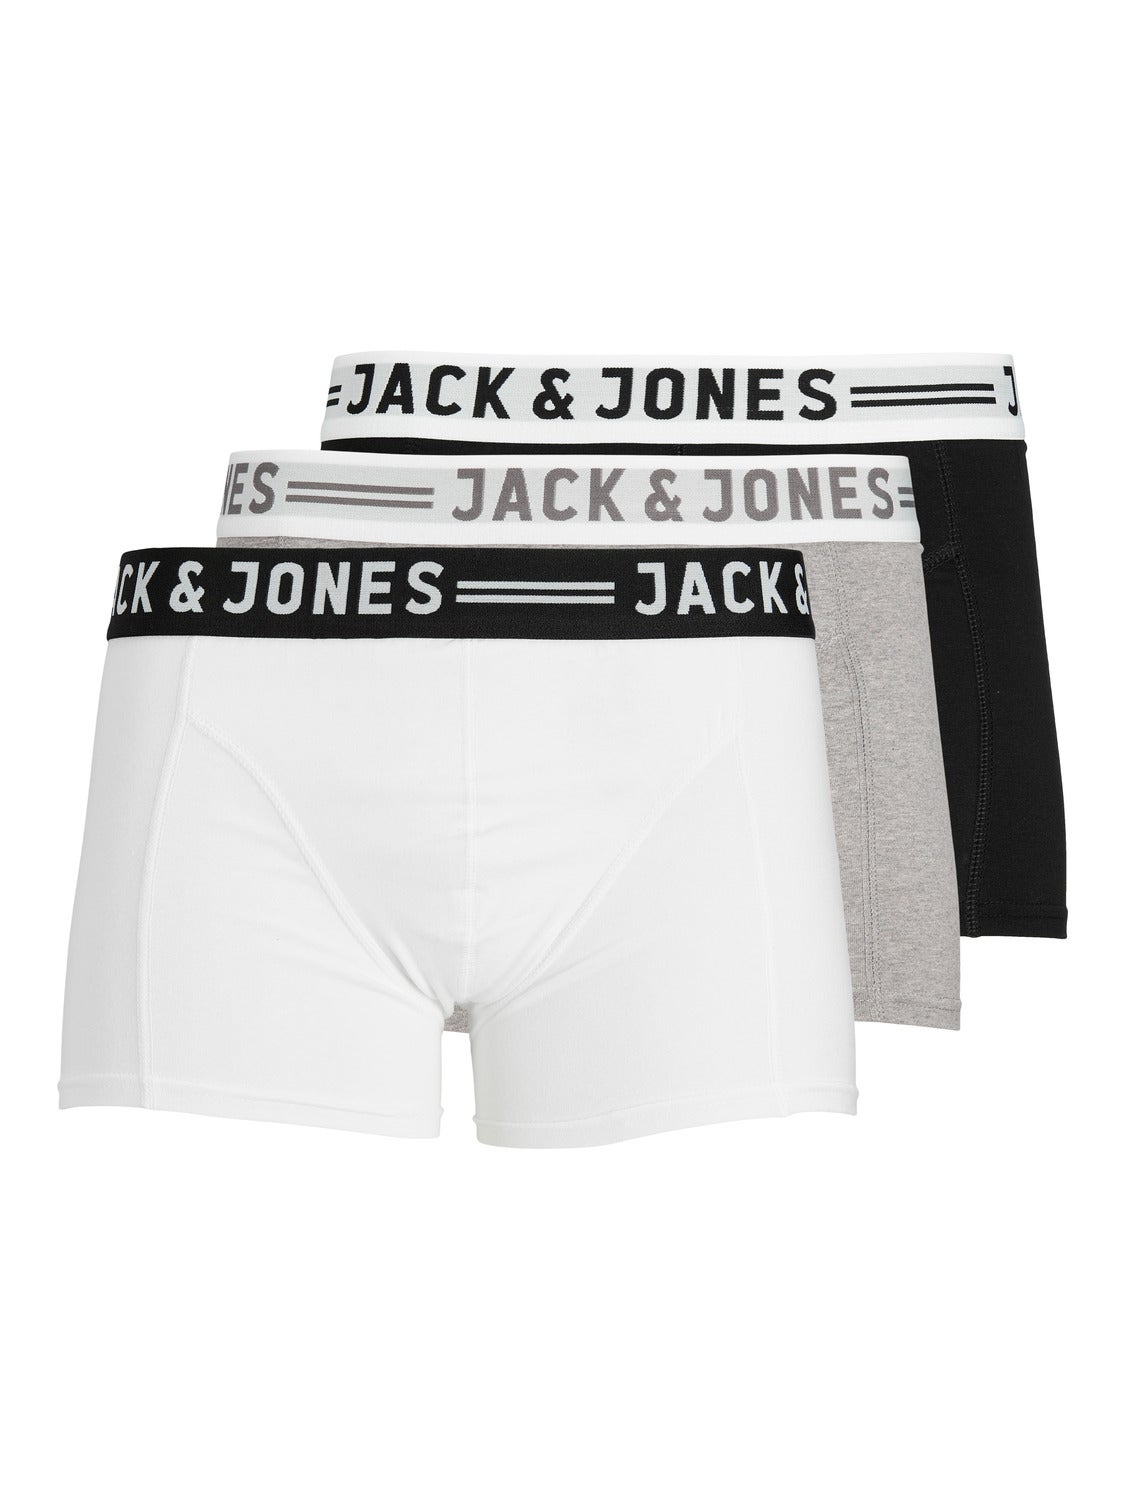 Gray L Jack & Jones Underpant discount 54% MEN FASHION Underwear & Nightwear 